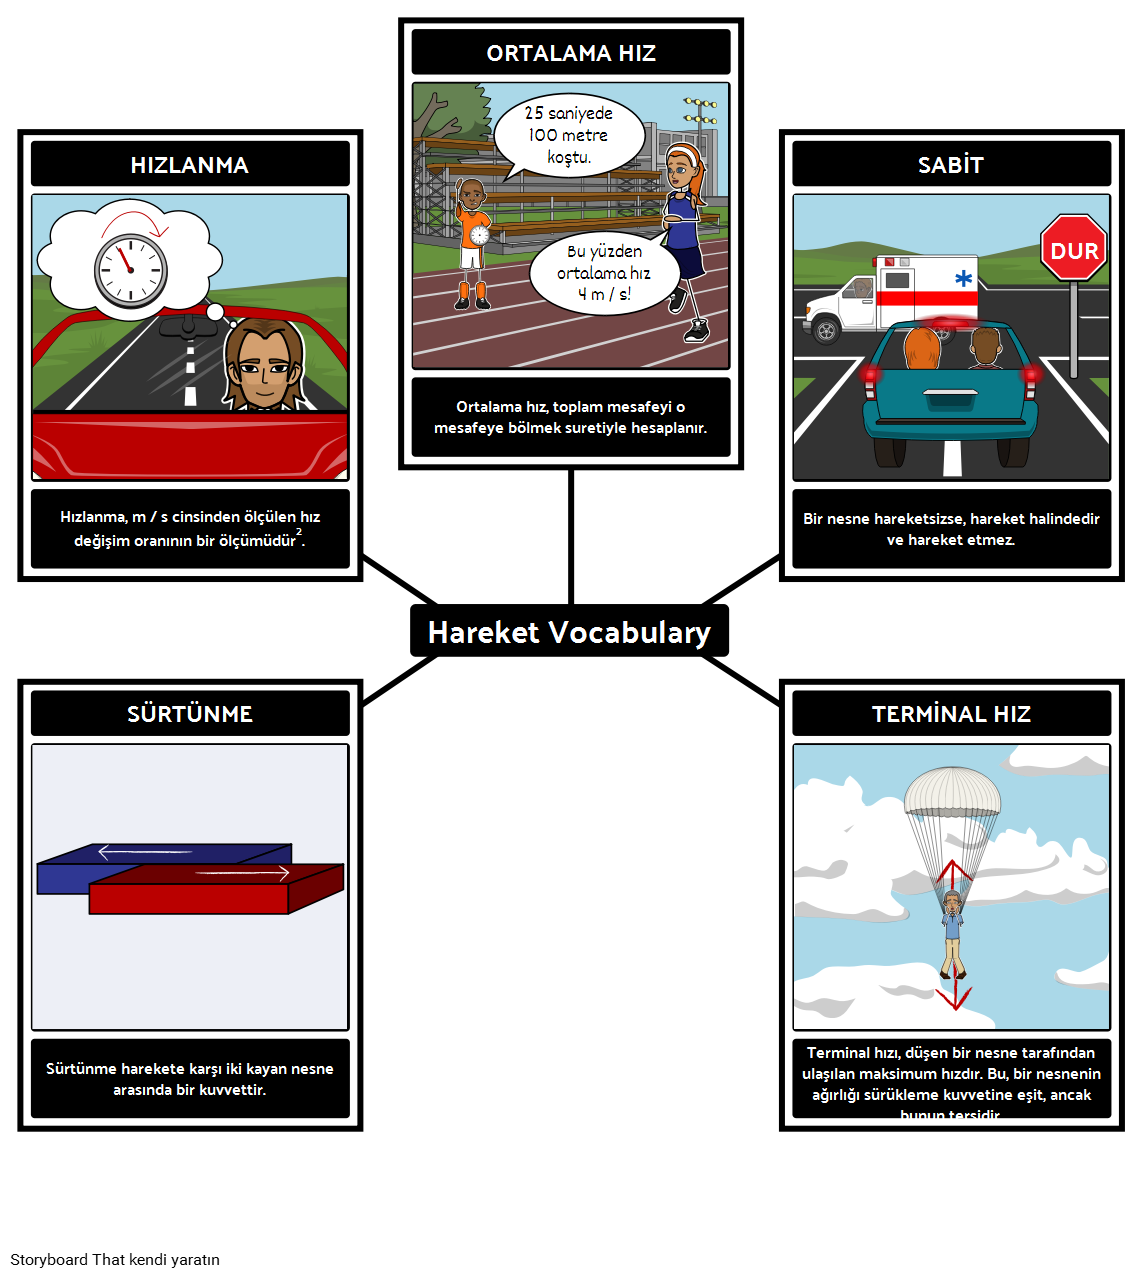 Hareket Vocabulary